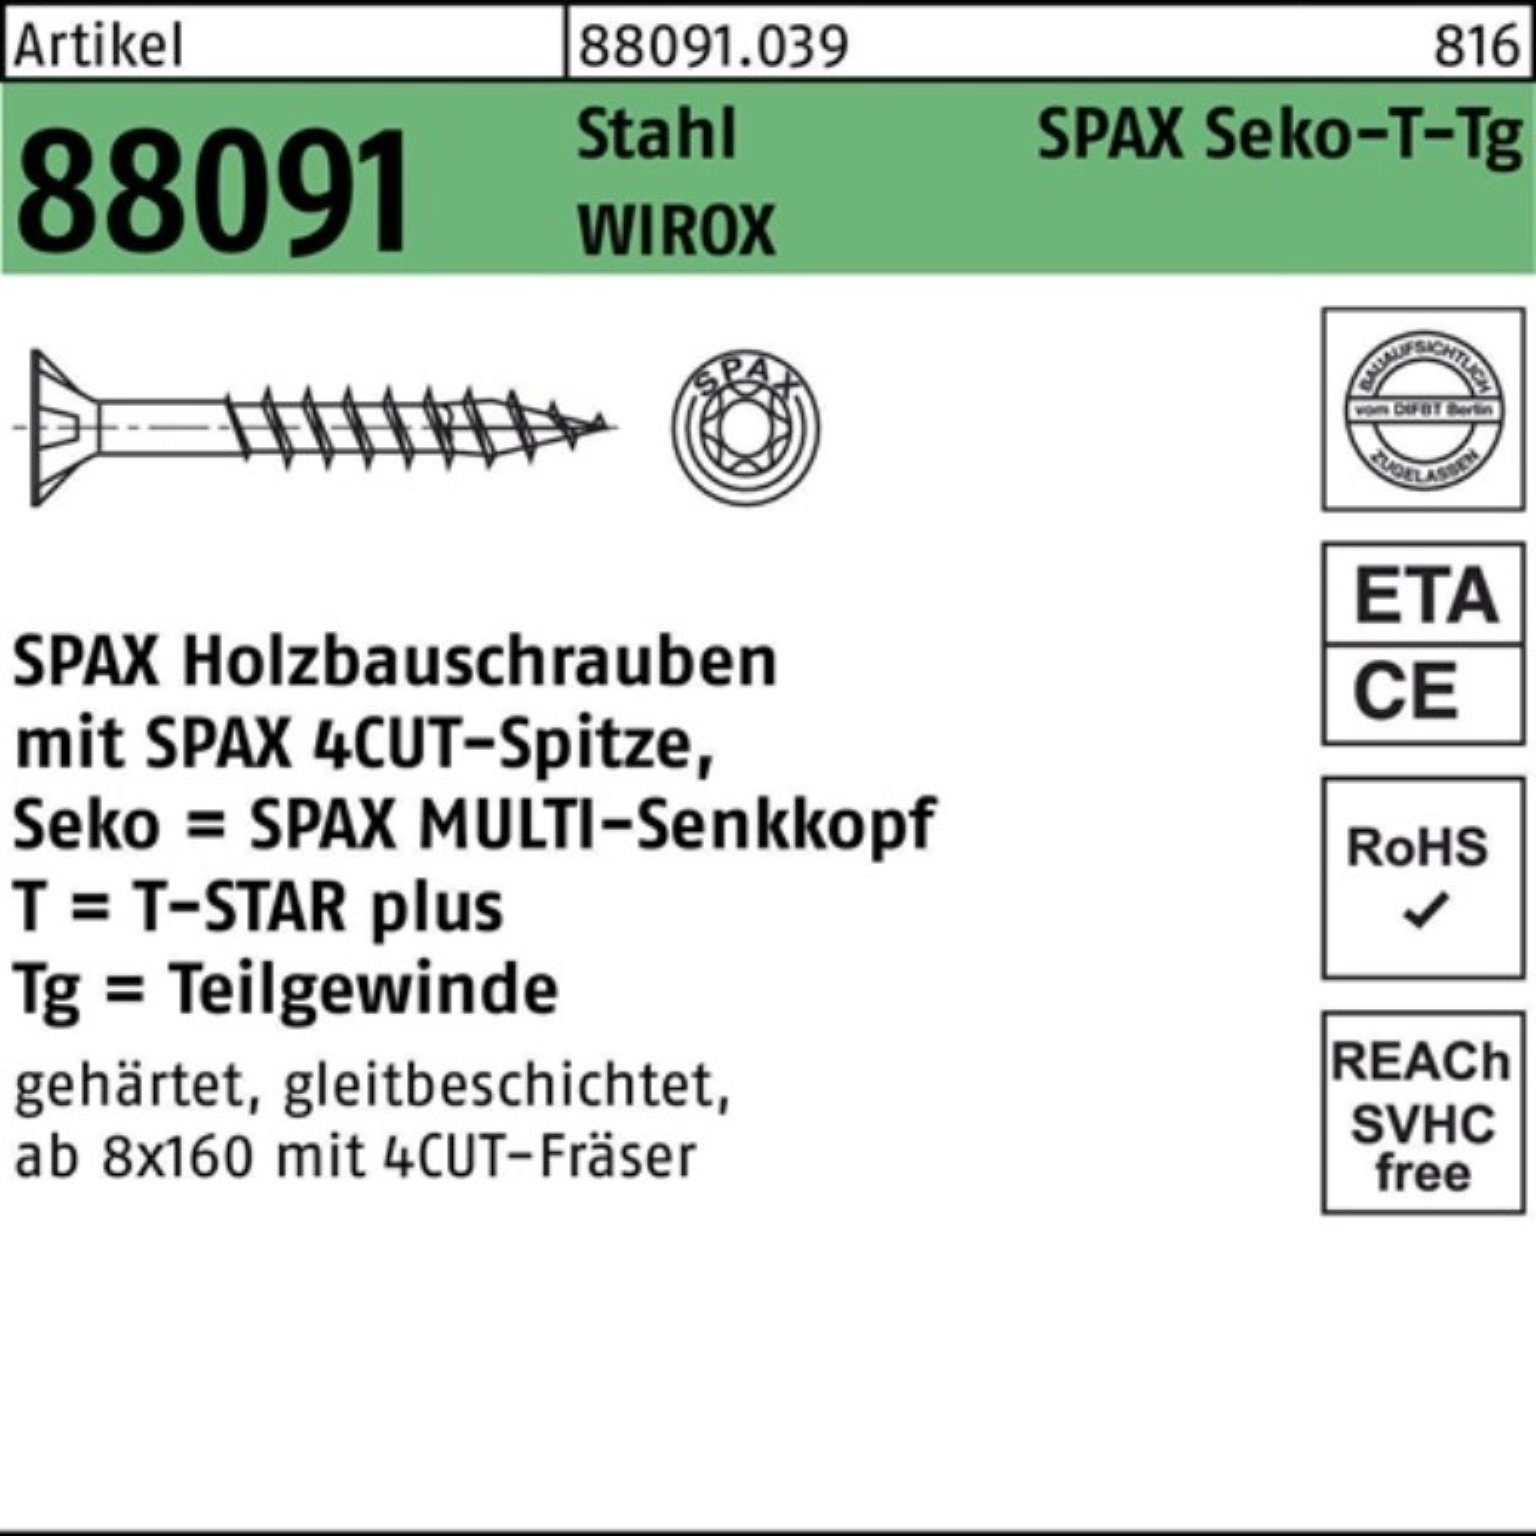 88091 SEKO/T-STAR 100er Pack TG SPAX R 360/80-T50 Schraube Stahl Schraube 10x WIROX